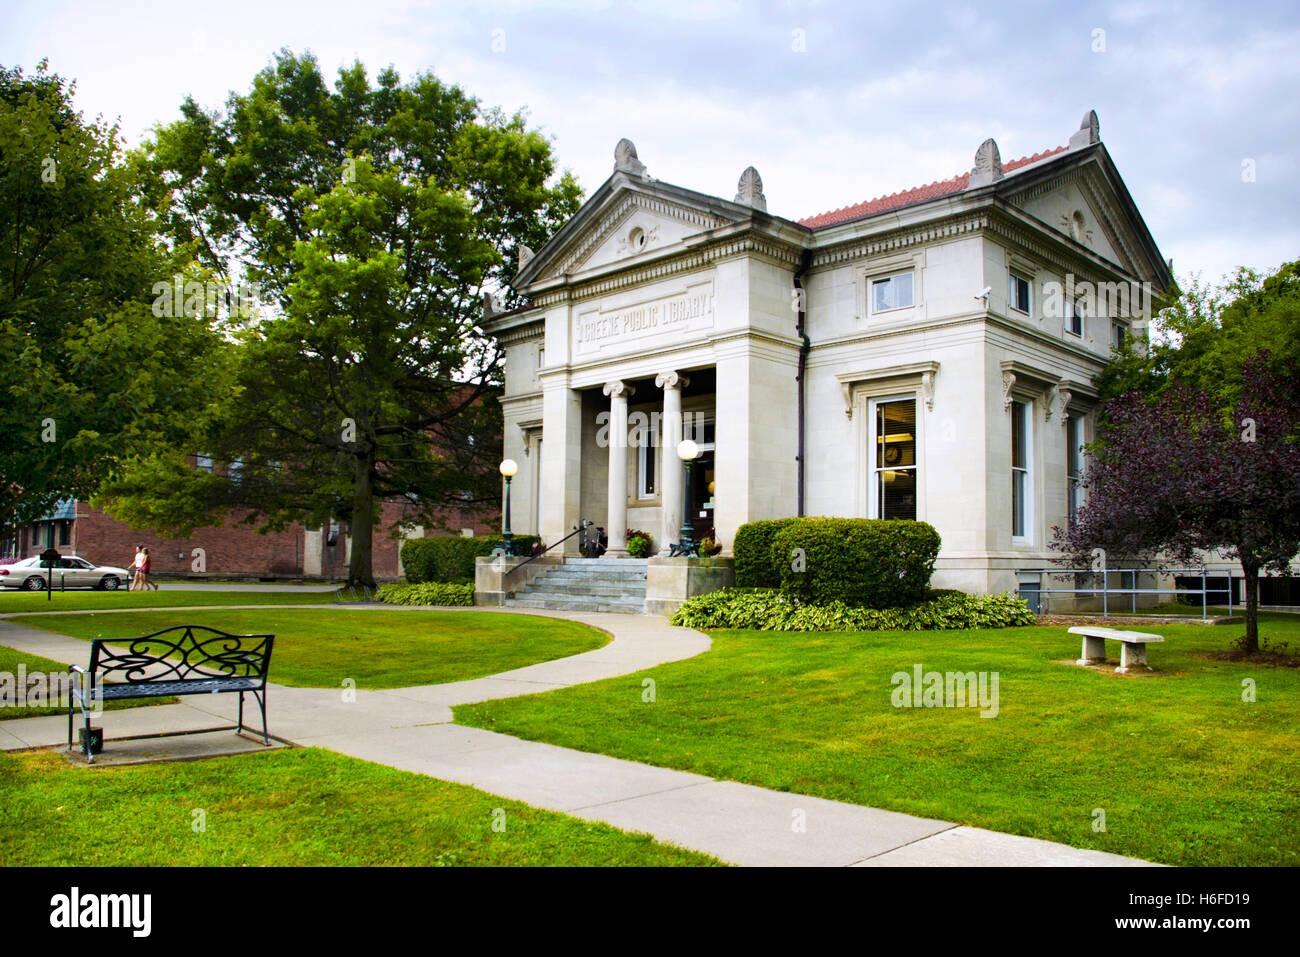 Biblioteca pubblica di architettura di Greene, chenango county southern tier regione upstate new york, Stati Uniti d'America. Foto Stock